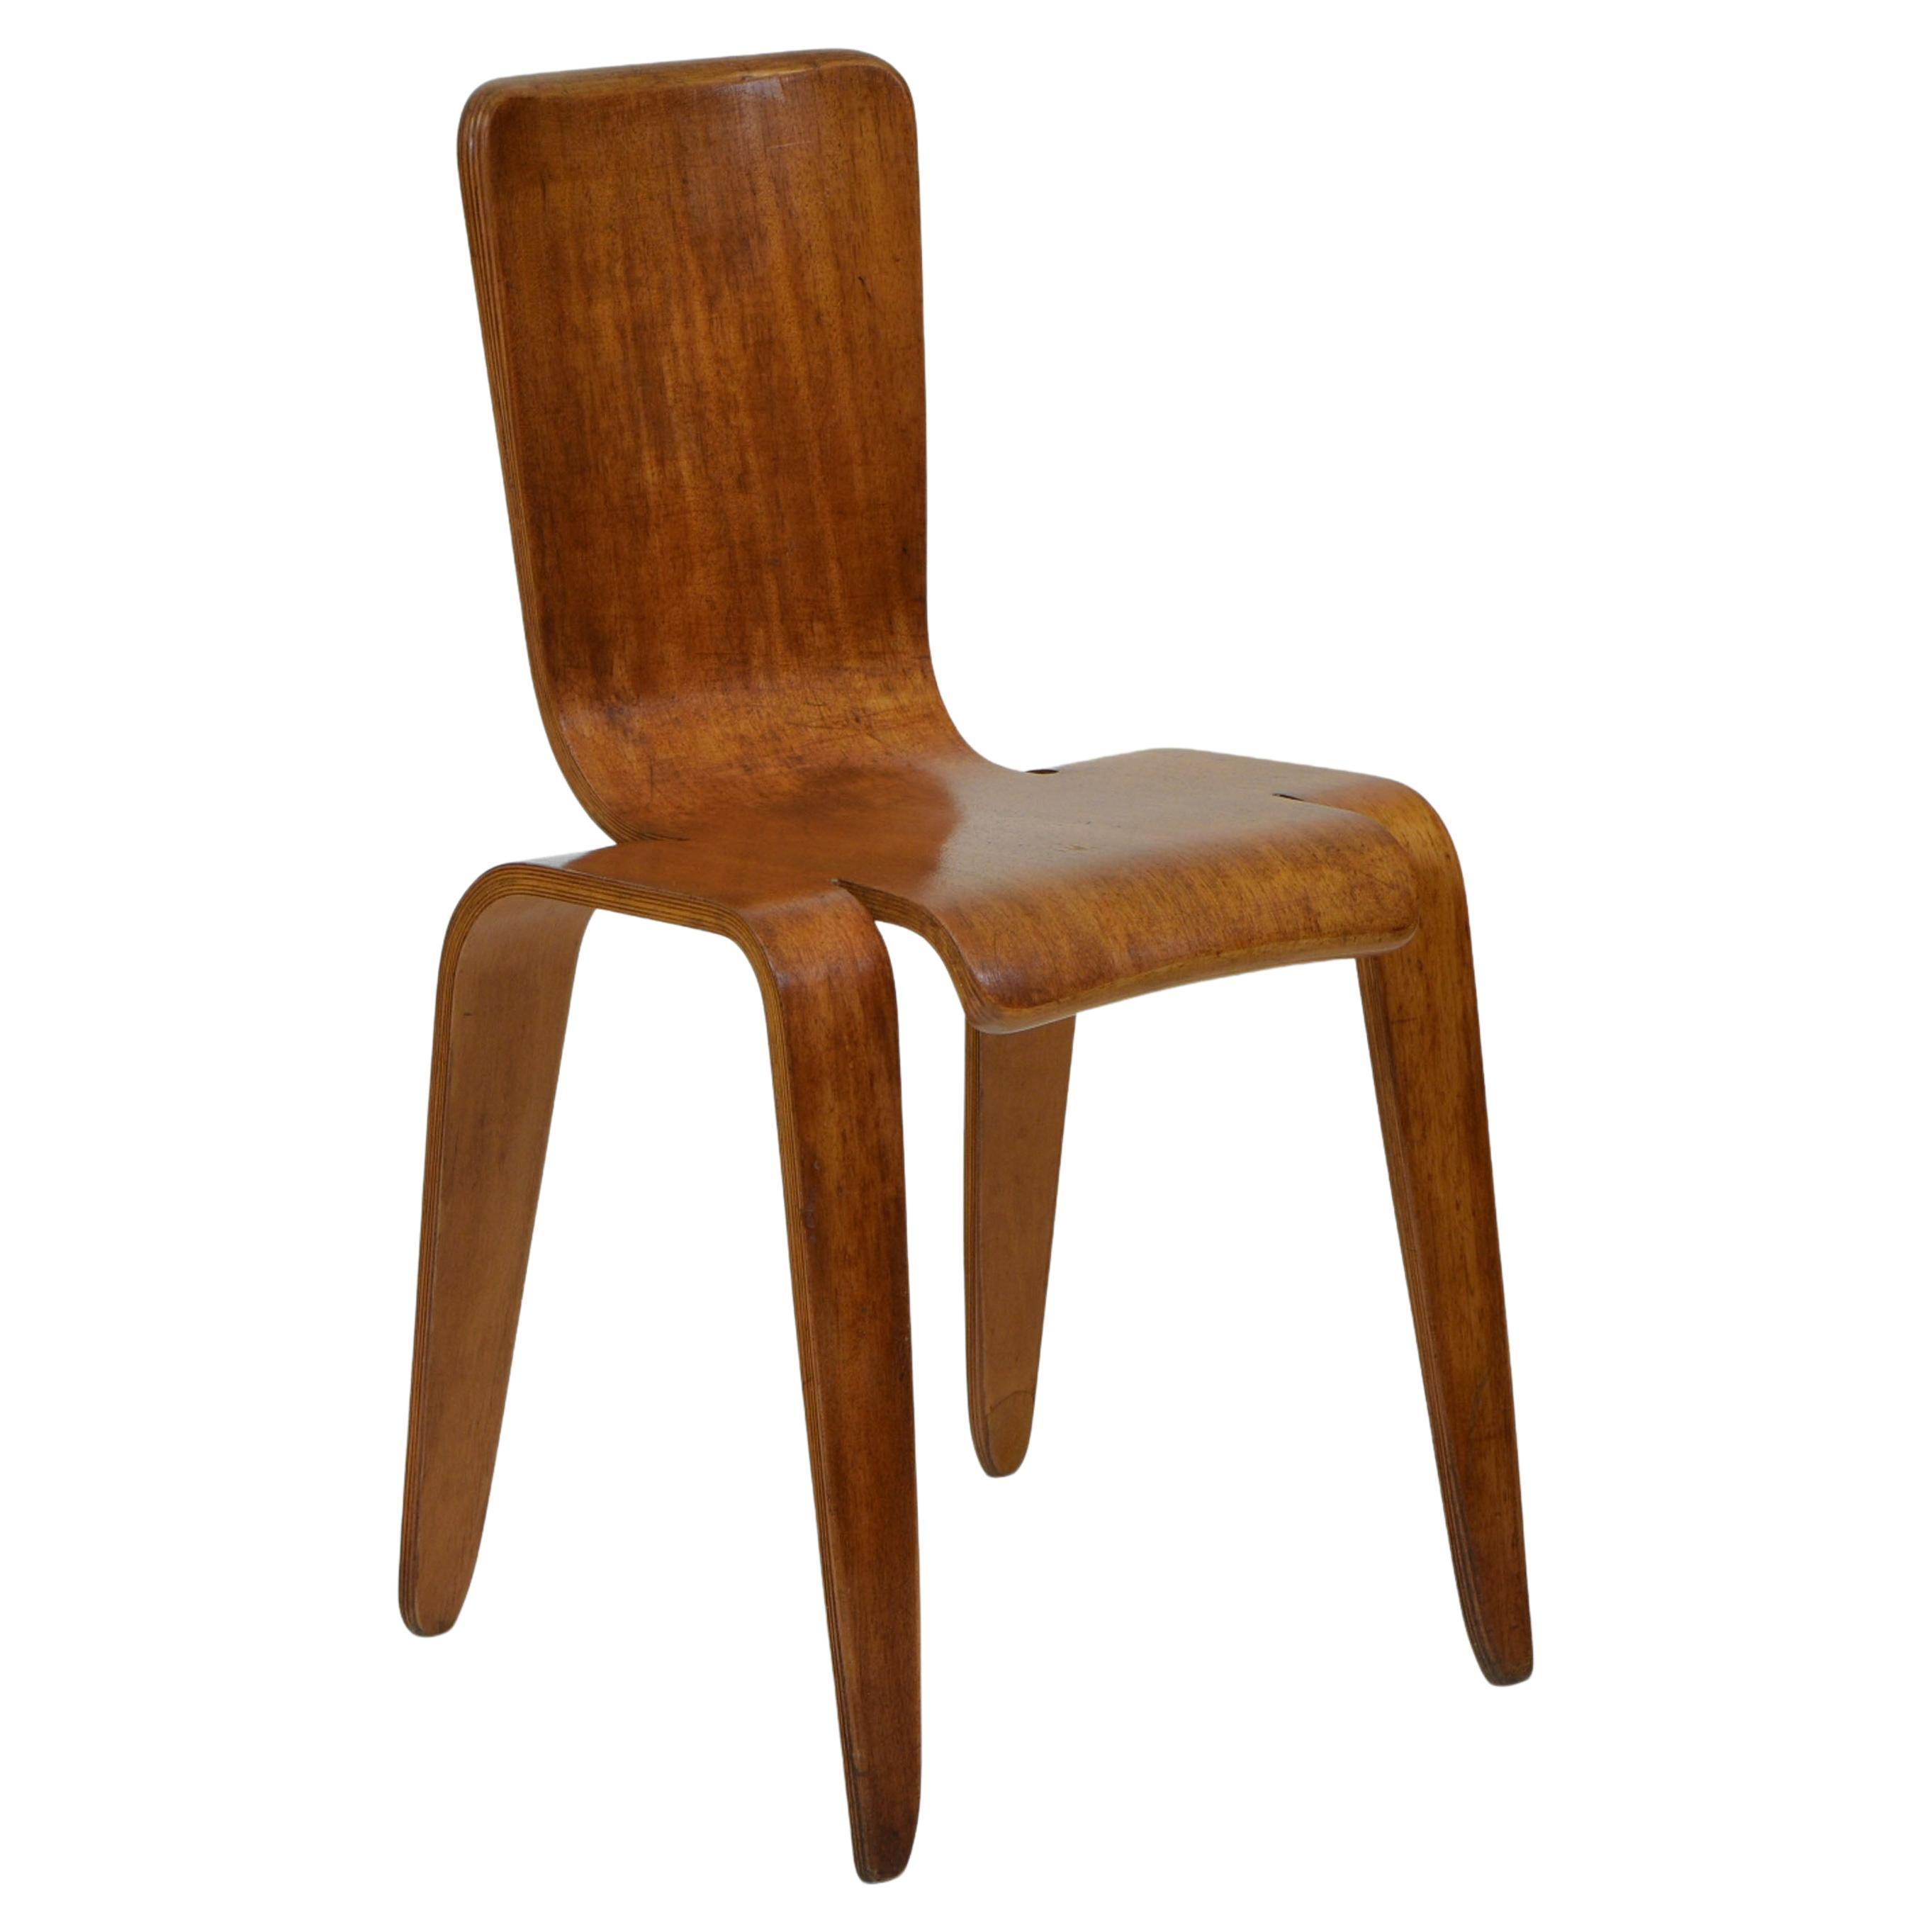 Seltener Bambi-Stuhl entworfen von Han Pieck für Morris & Co Glasgow